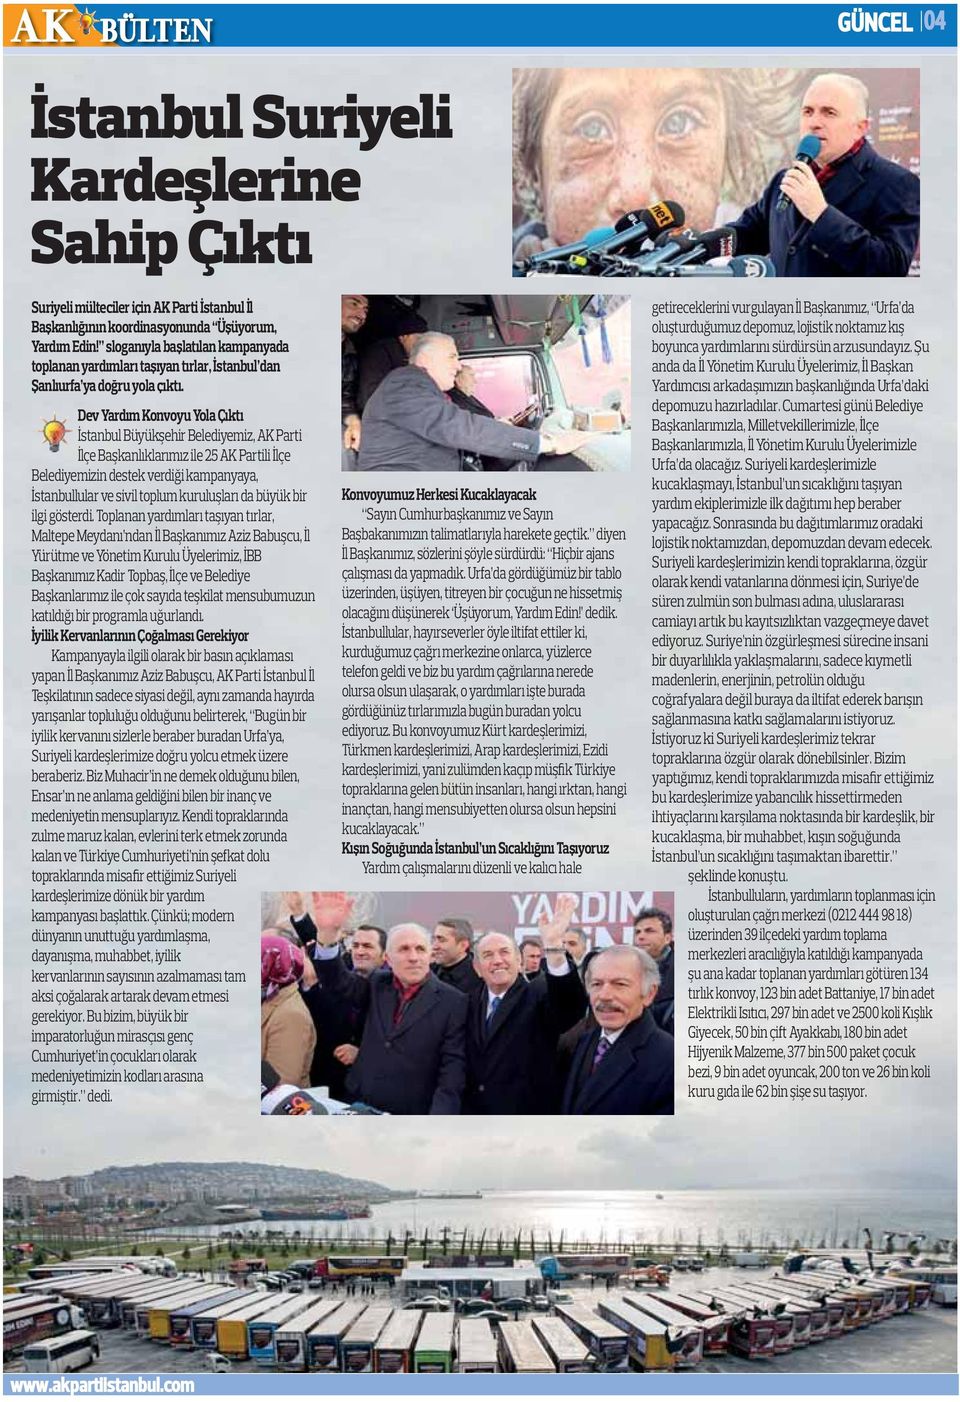 Dev Yardım Konvoyu Yola Çıktı İstanbul Büyükşehir Belediyemiz, AK Parti İlçe Başkanlıklarımız ile 25 AK Partili İlçe Belediyemizin destek verdiği kampanyaya, İstanbullular ve sivil toplum kuruluşları